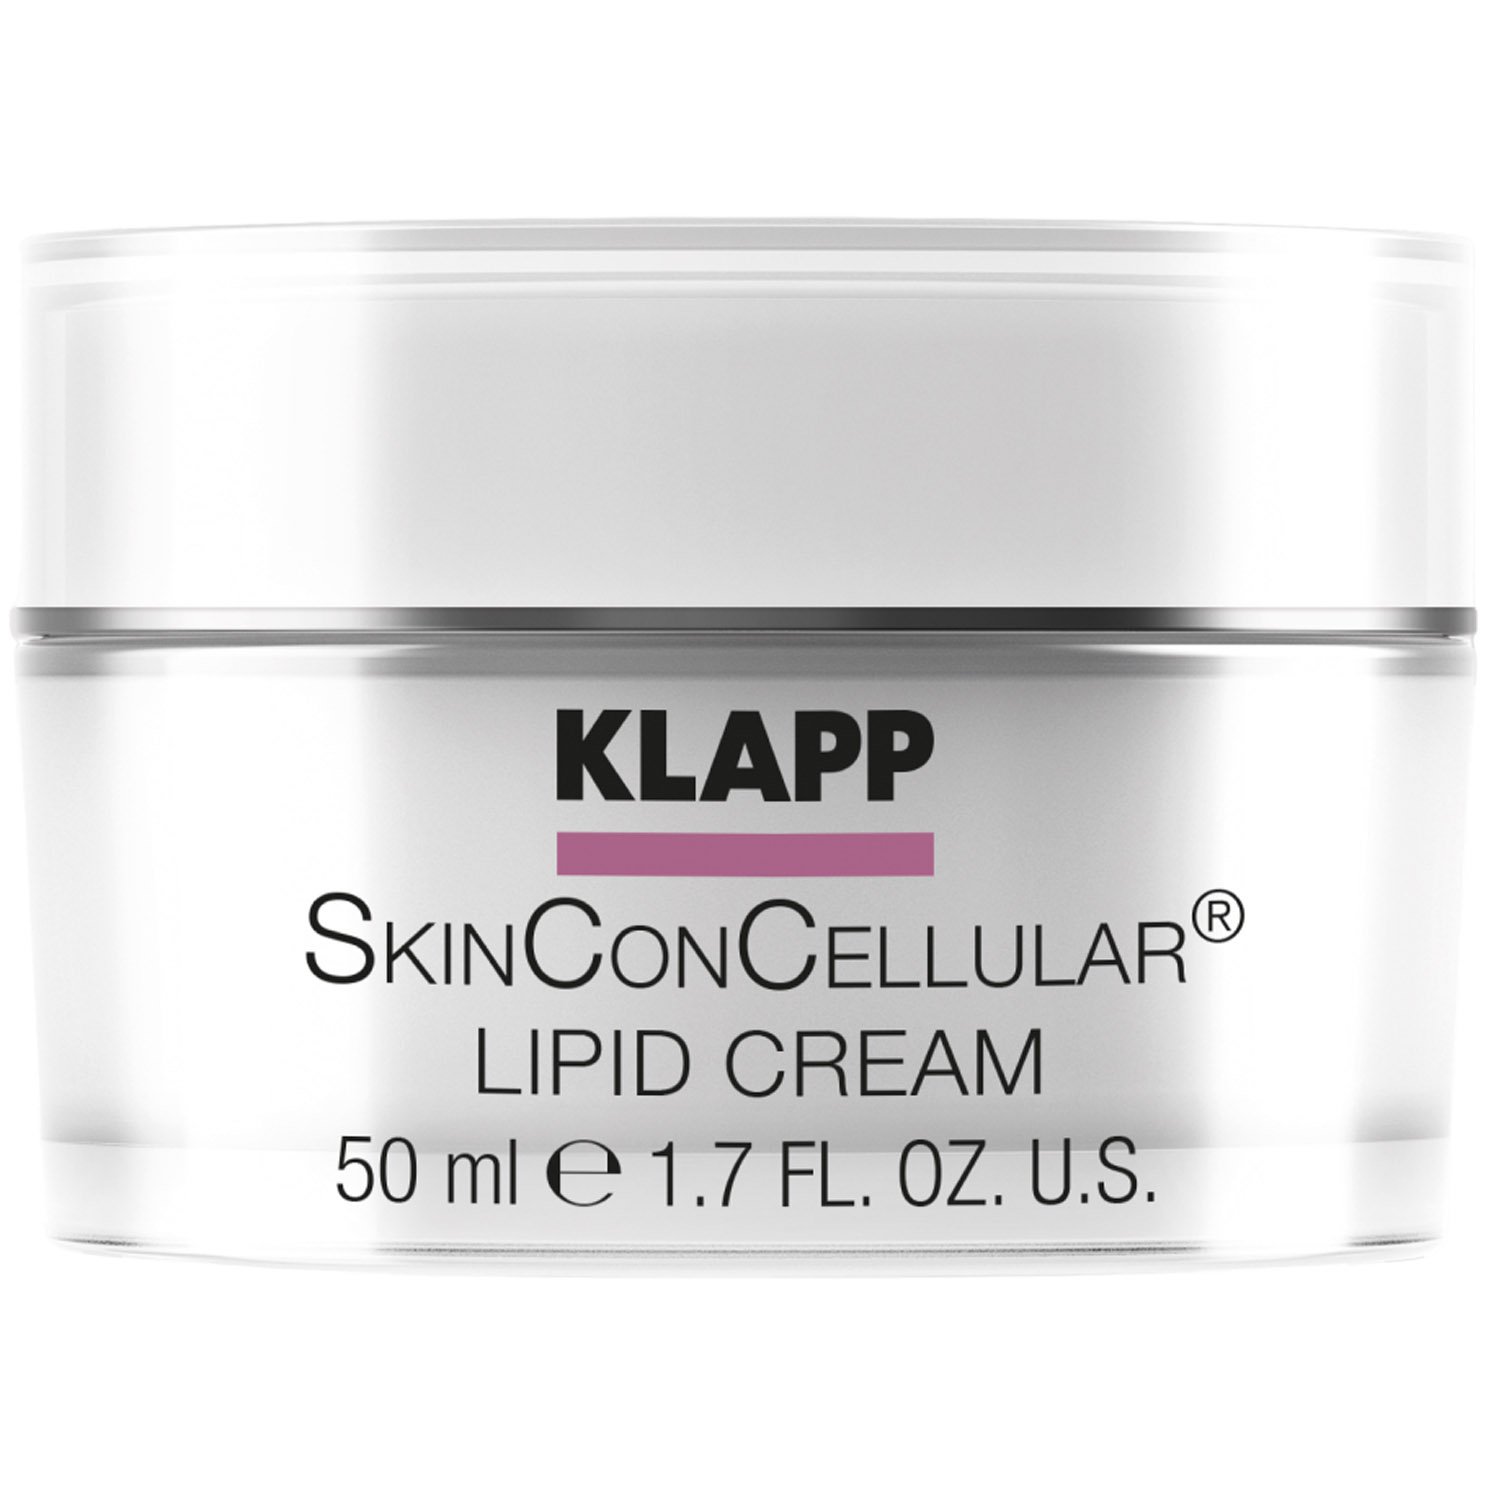 Крем для лица Klapp Skin Con Cellular Lipid Cream, питательный, 50 мл - фото 1